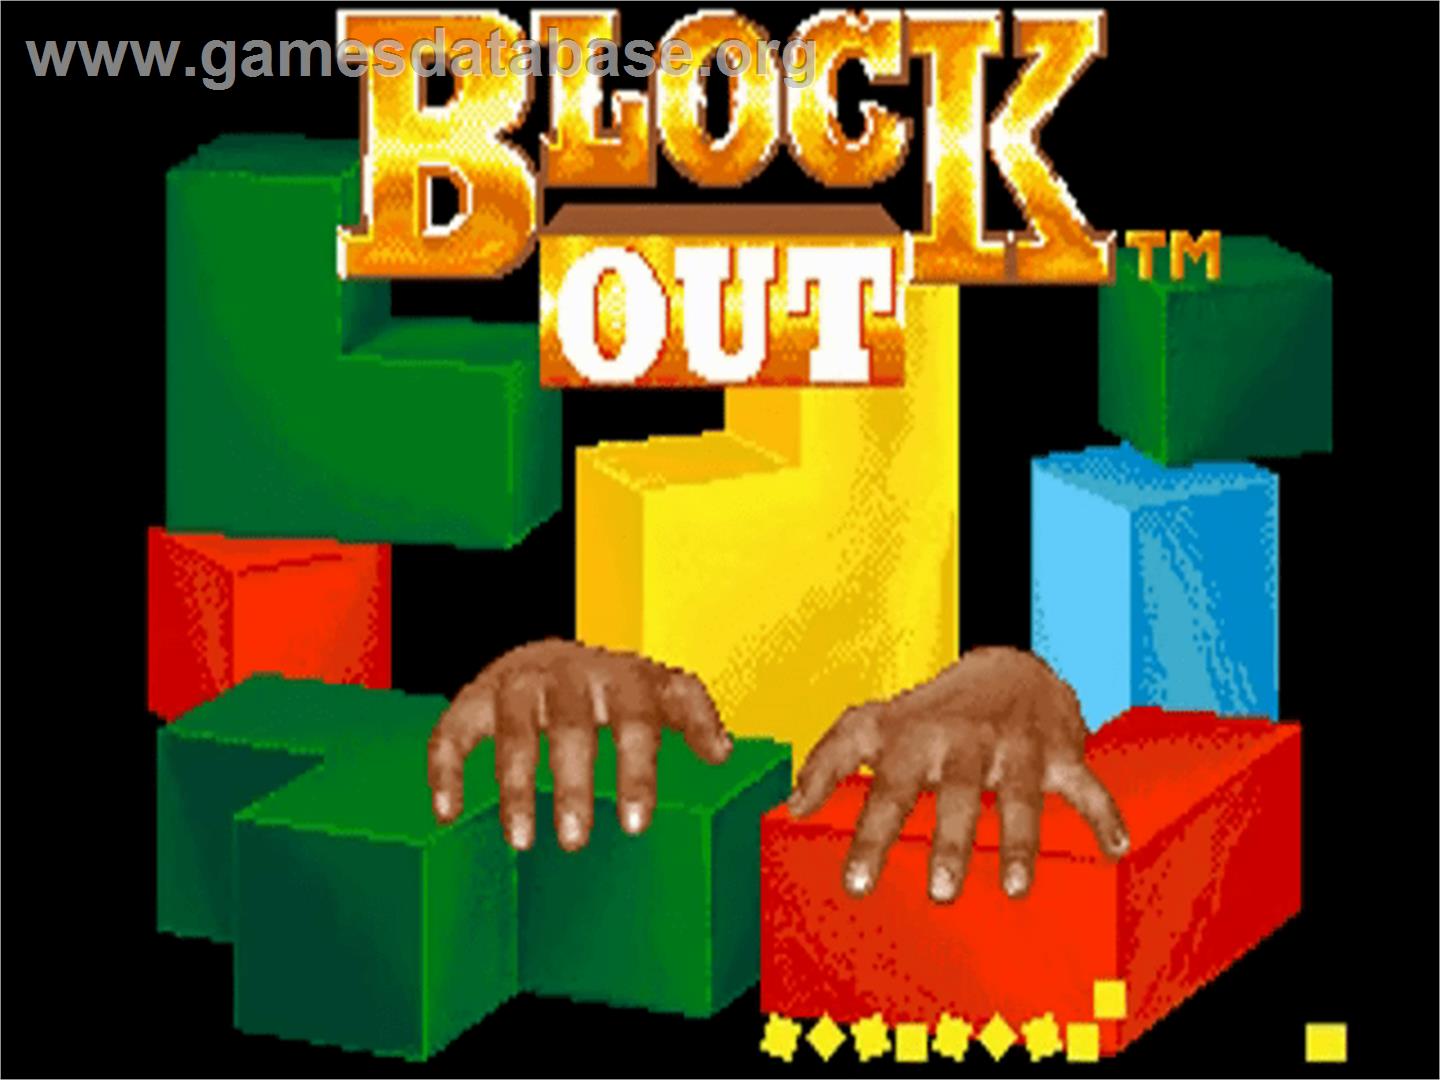 Blockout - Commodore Amiga - Artwork - Title Screen